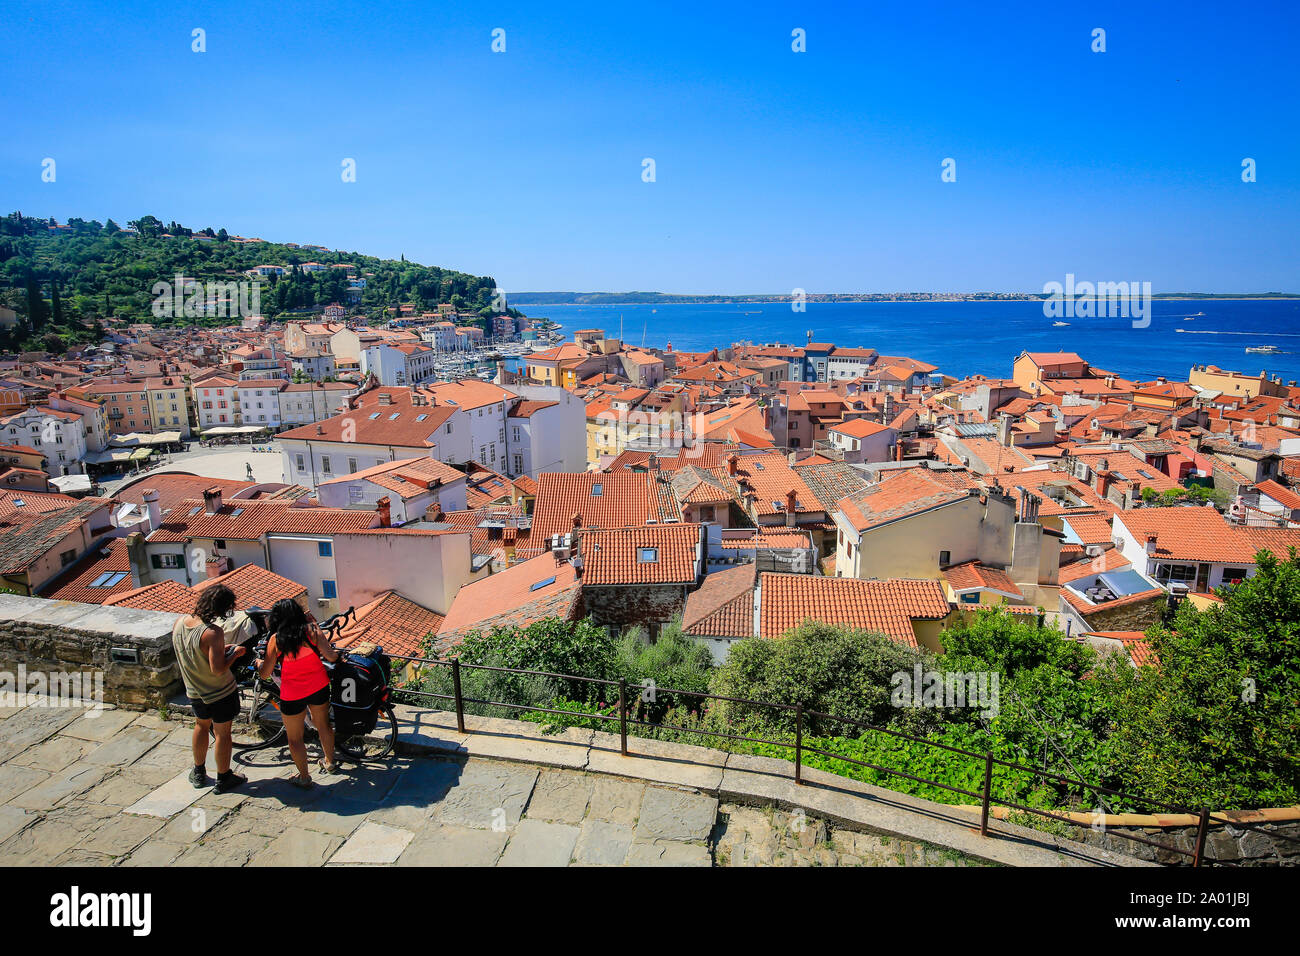 Pirano, Istria, Slovenia - vista città, con vista sui tetti della città portuale sul Mar Mediterraneo ed i ciclisti di fronte. Pirano, Istrien, Slowenien - St Foto Stock